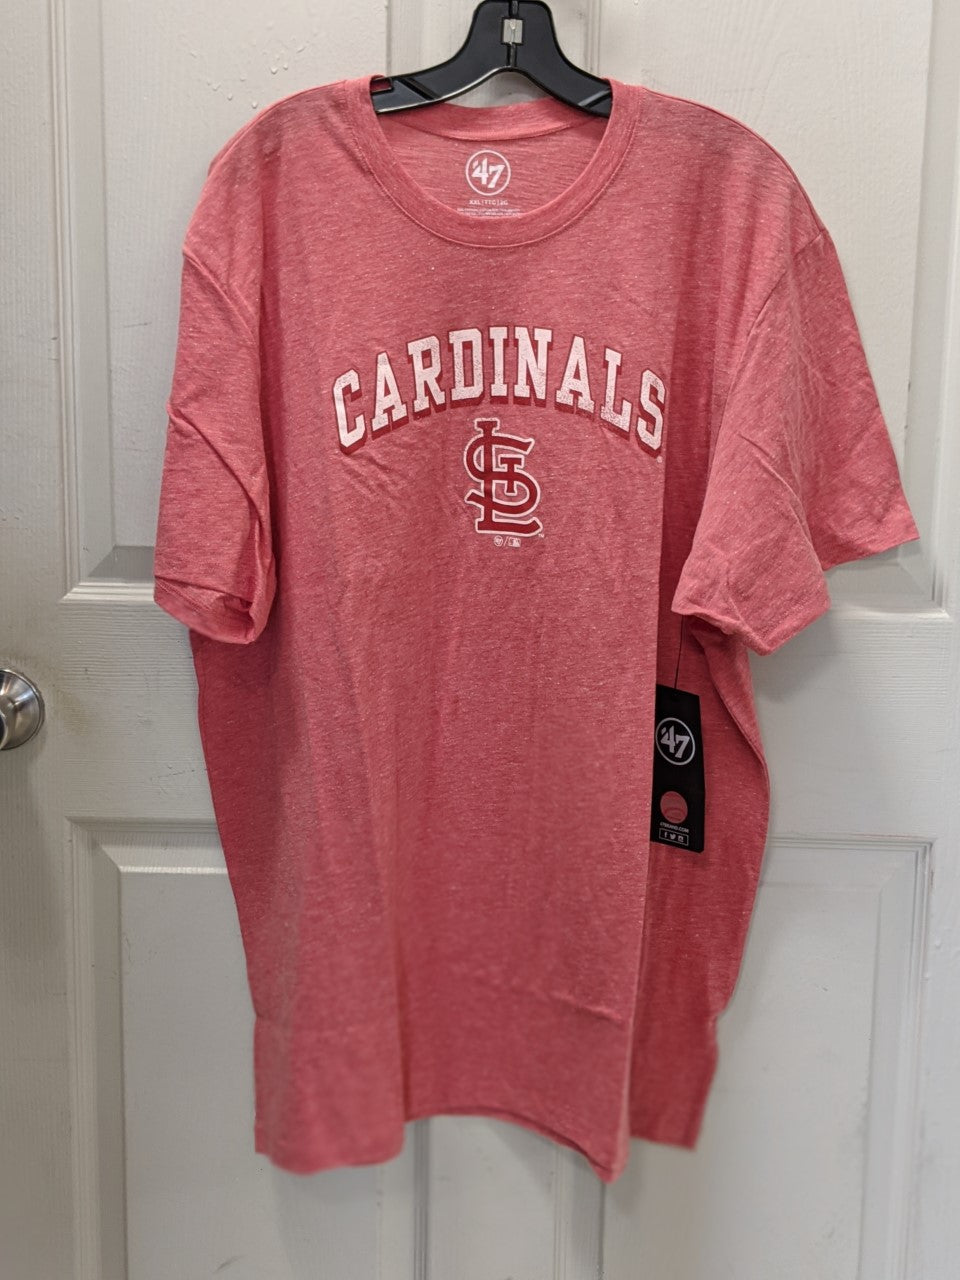 St. Louis Cardinals T-Shirt STL - The ICT University